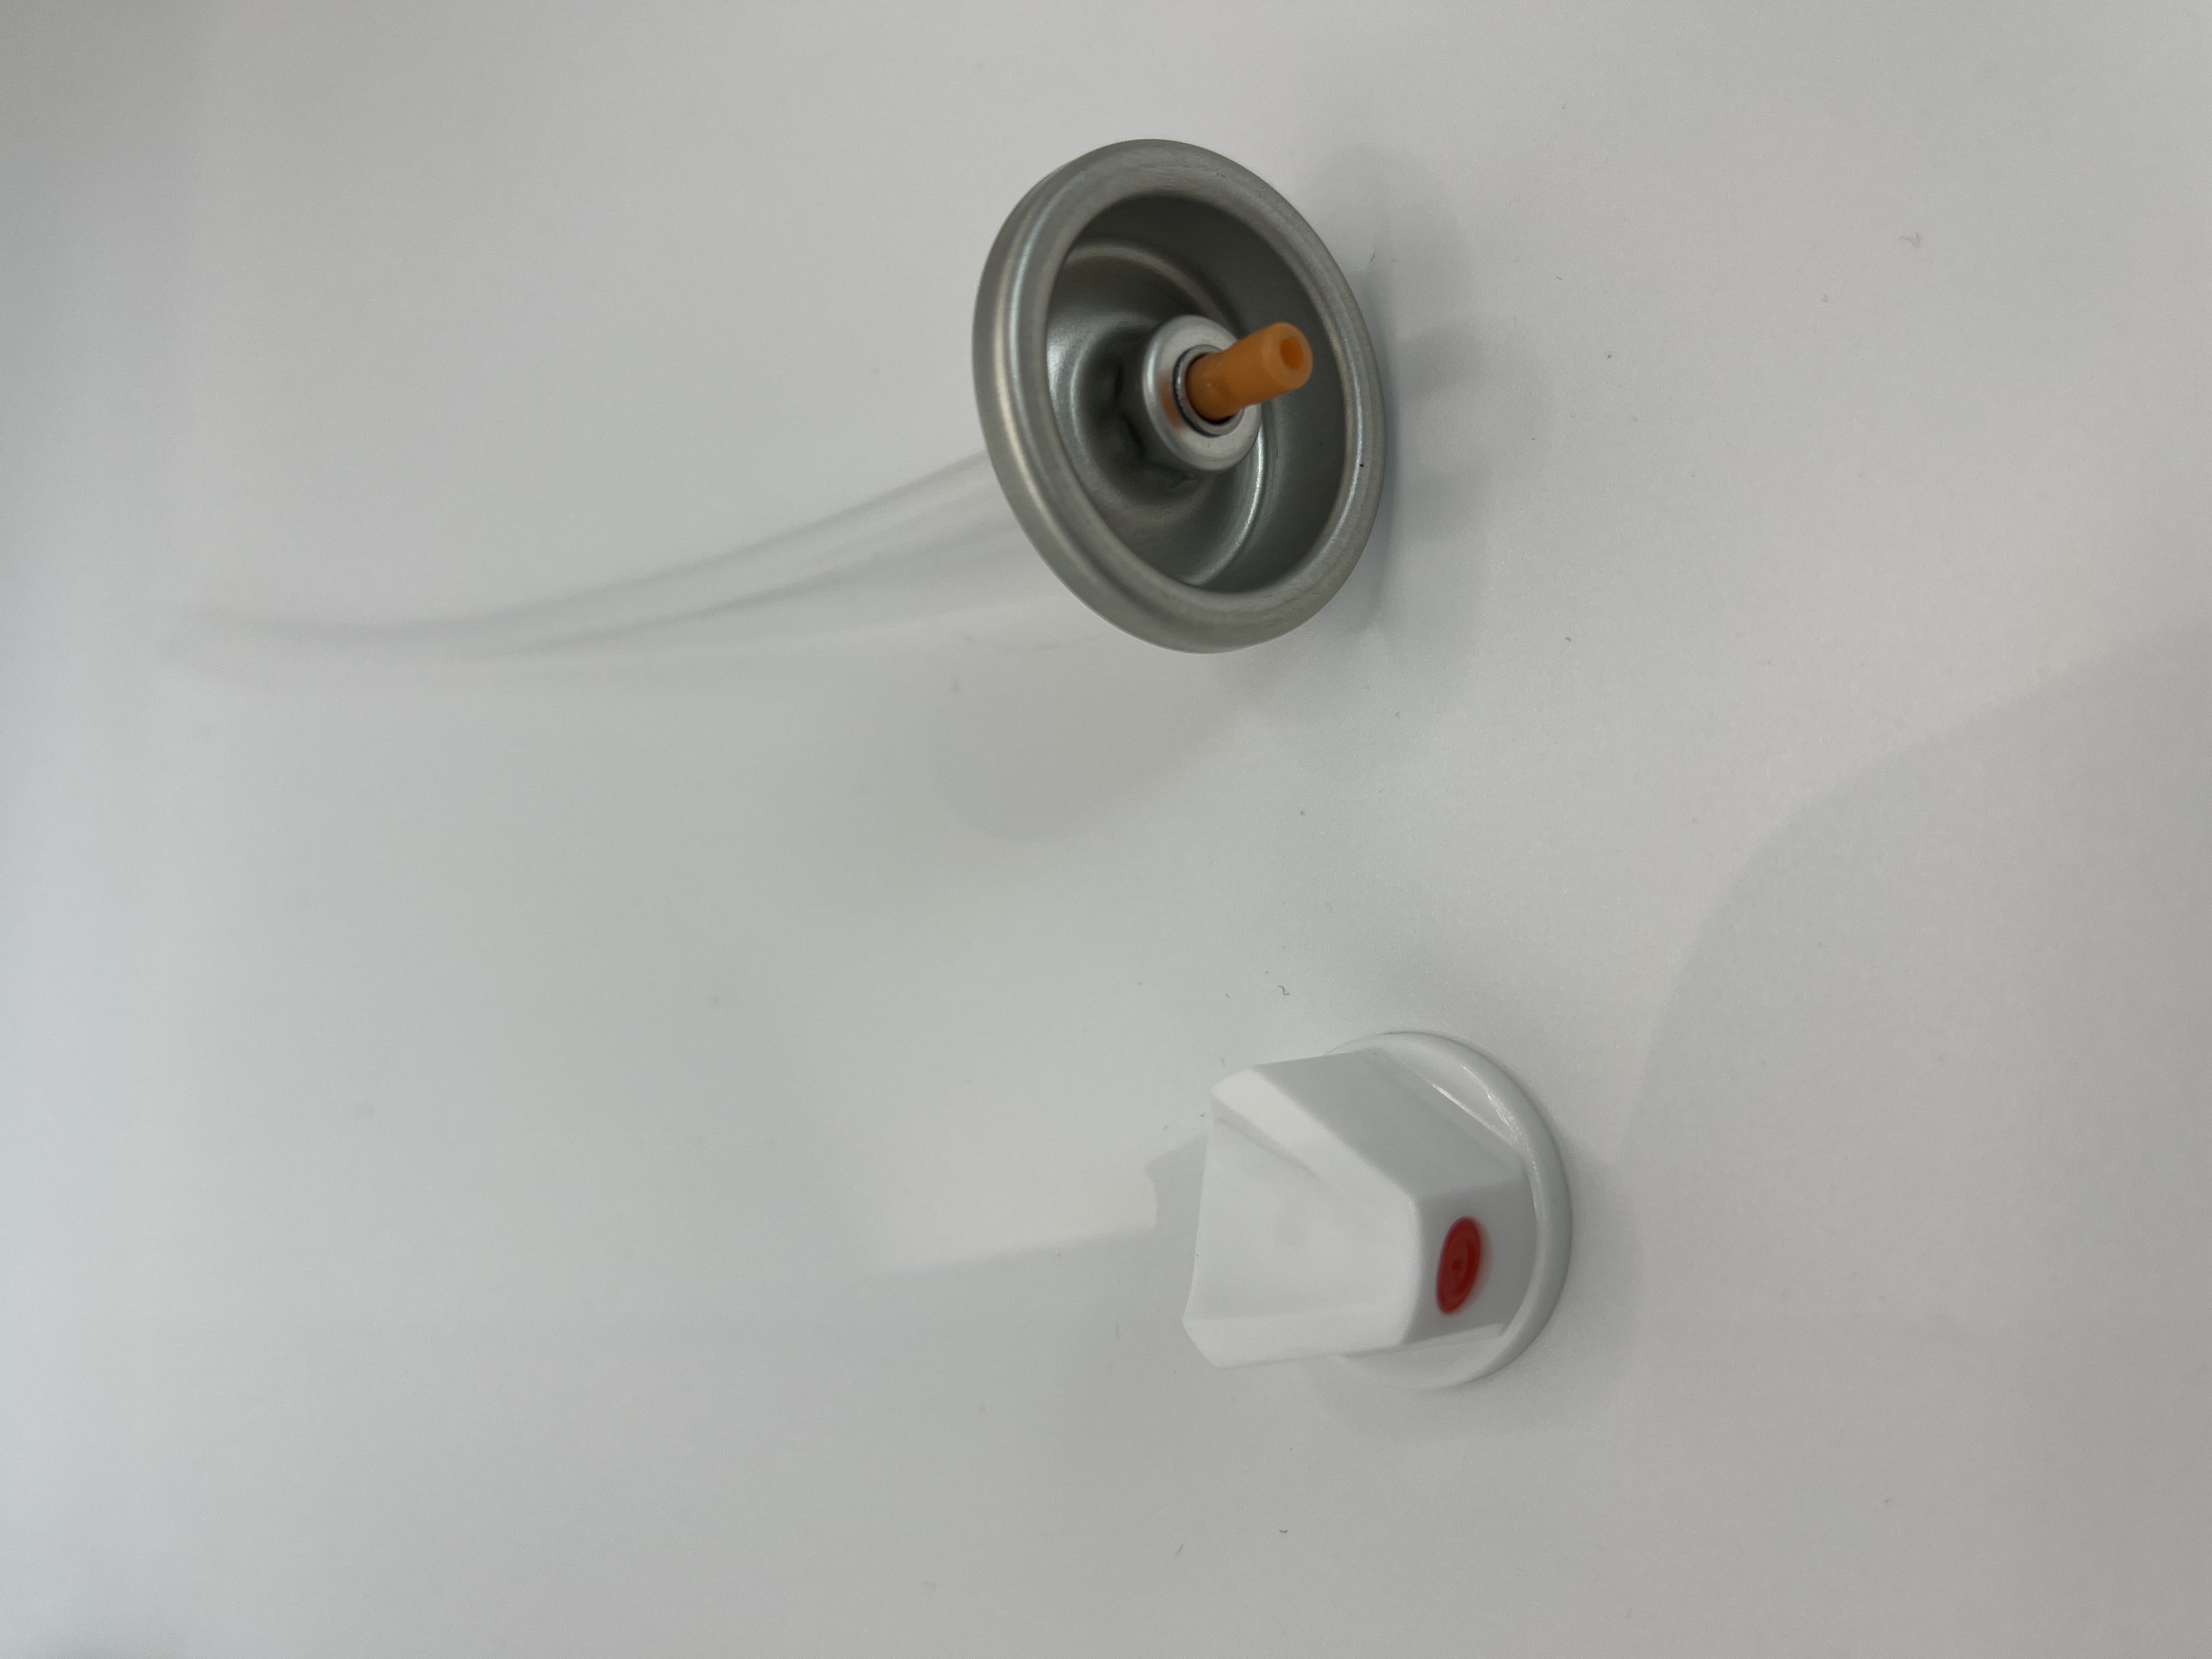 شیر اسپری رنگ الکتریکی - عملکرد بدون زحمت با جریان قابل تنظیم